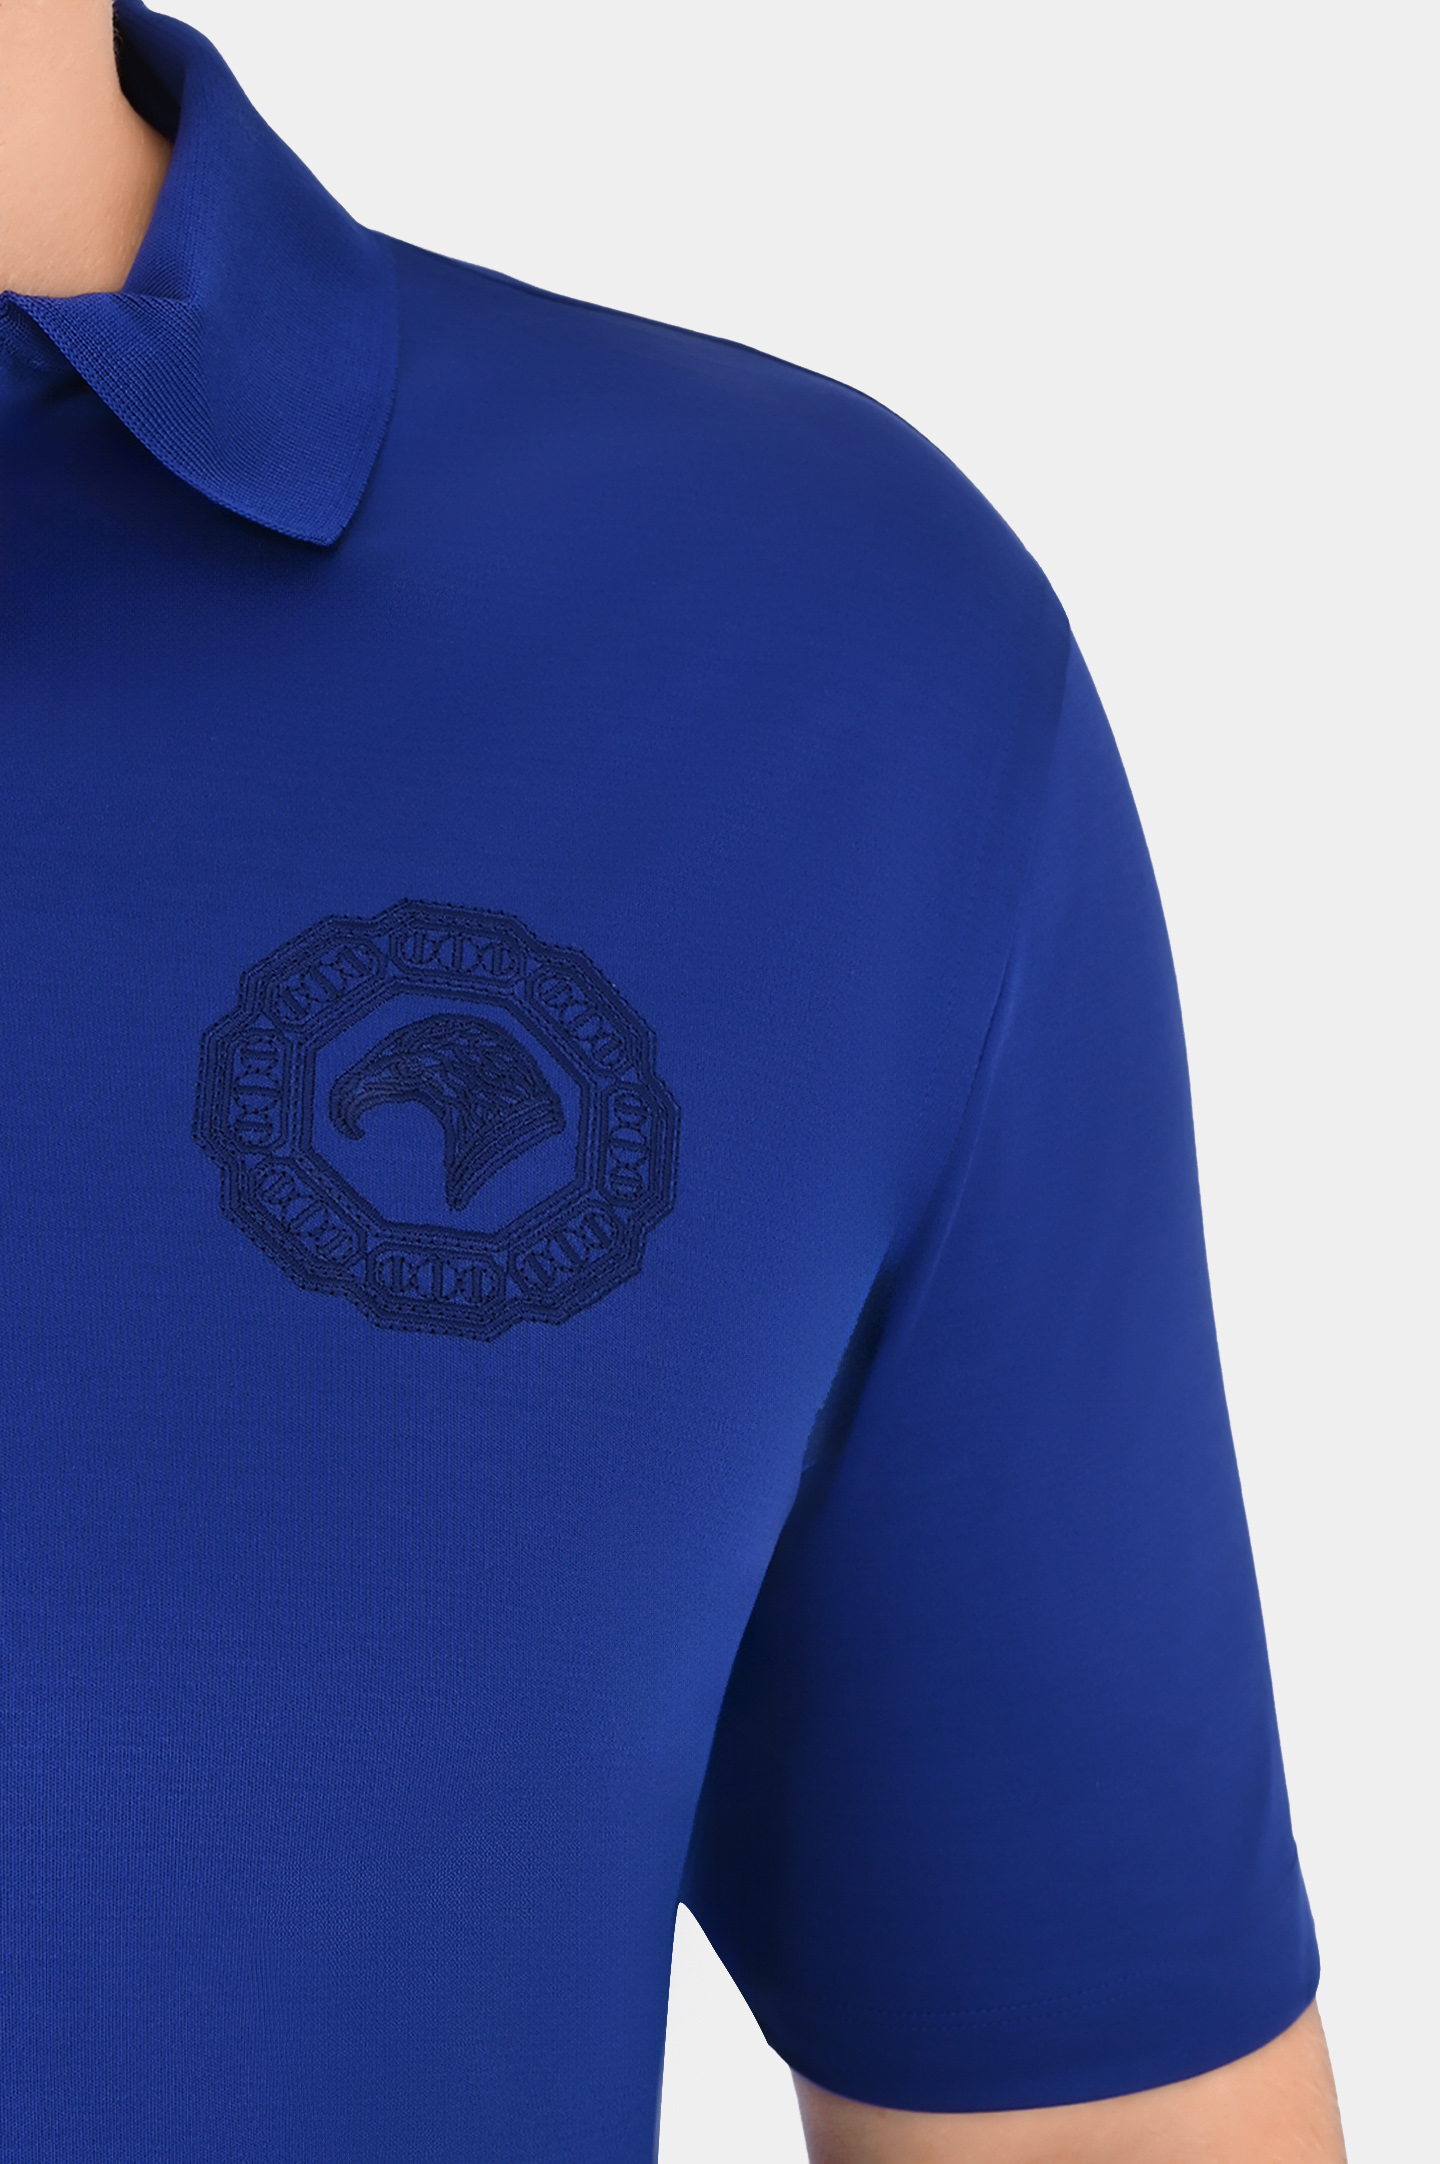 Хлопковое поло с логотипом на молнии STEFANO RICCI K111025P31 T24160, цвет: Синий, Мужской